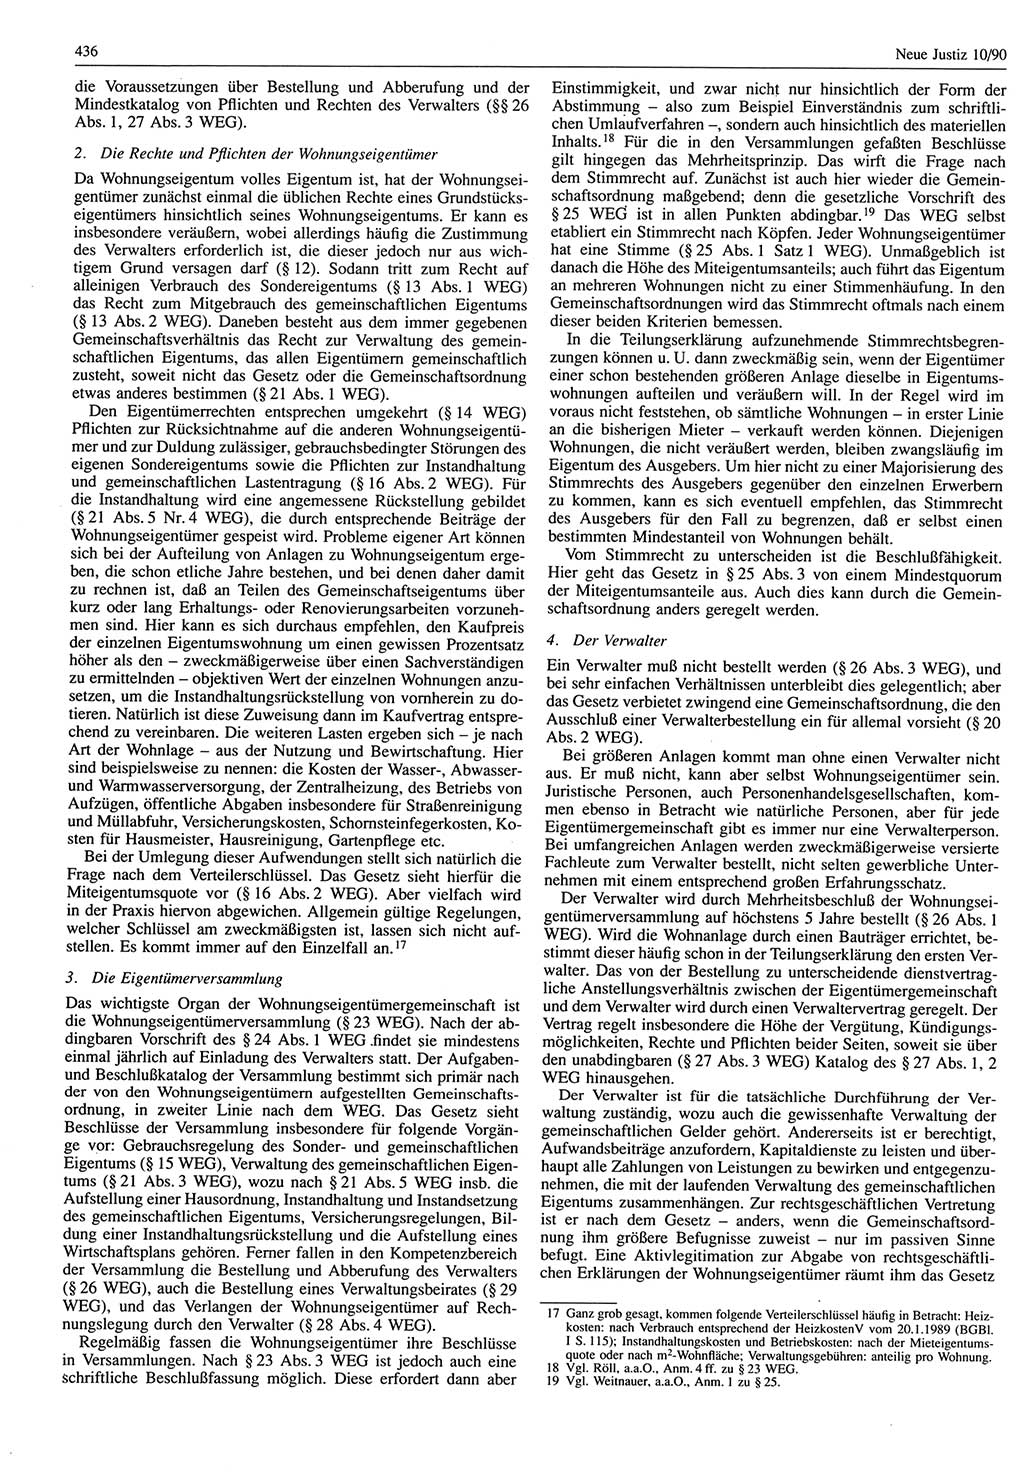 Neue Justiz (NJ), Zeitschrift für Rechtsetzung und Rechtsanwendung [Deutsche Demokratische Republik (DDR)], 44. Jahrgang 1990, Seite 436 (NJ DDR 1990, S. 436)